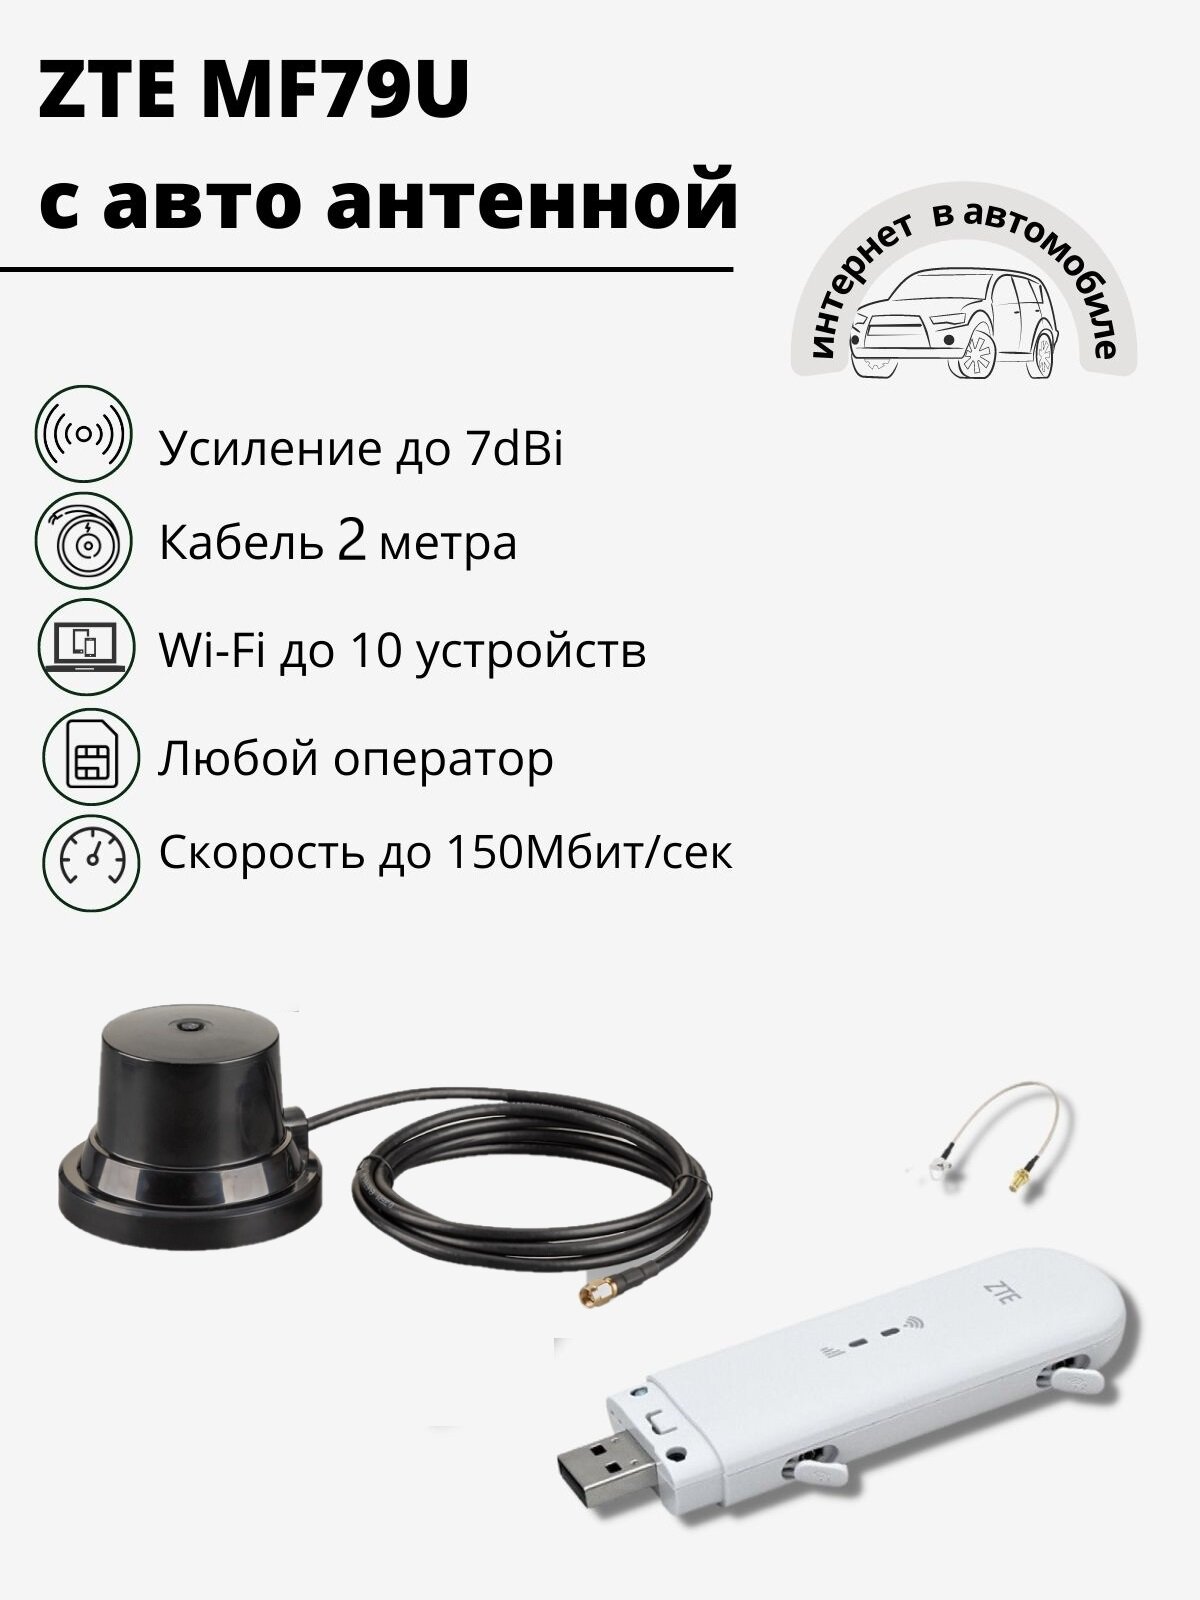 Комплект ZTE MF79U с авто антенной до 7dBi Cat.4 до 150Мбит/сек